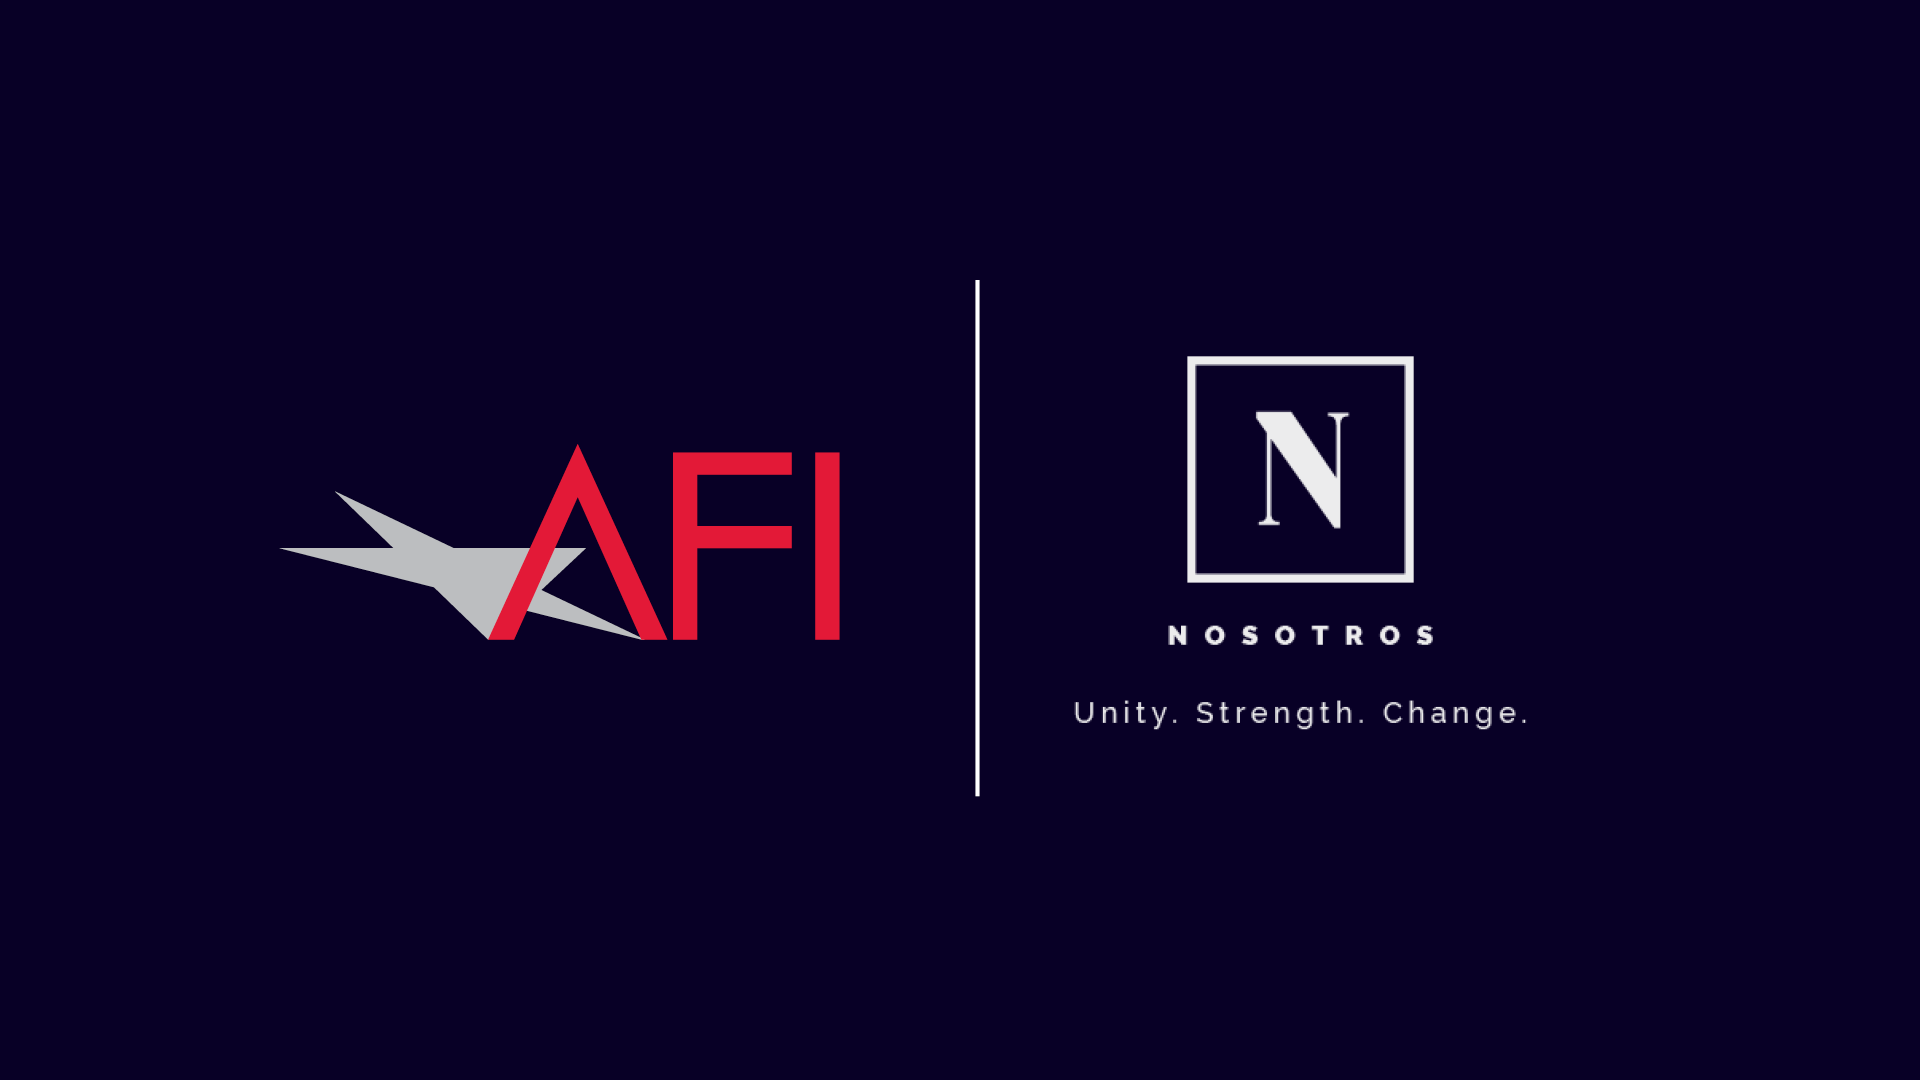 AFI and Nosotros Logos